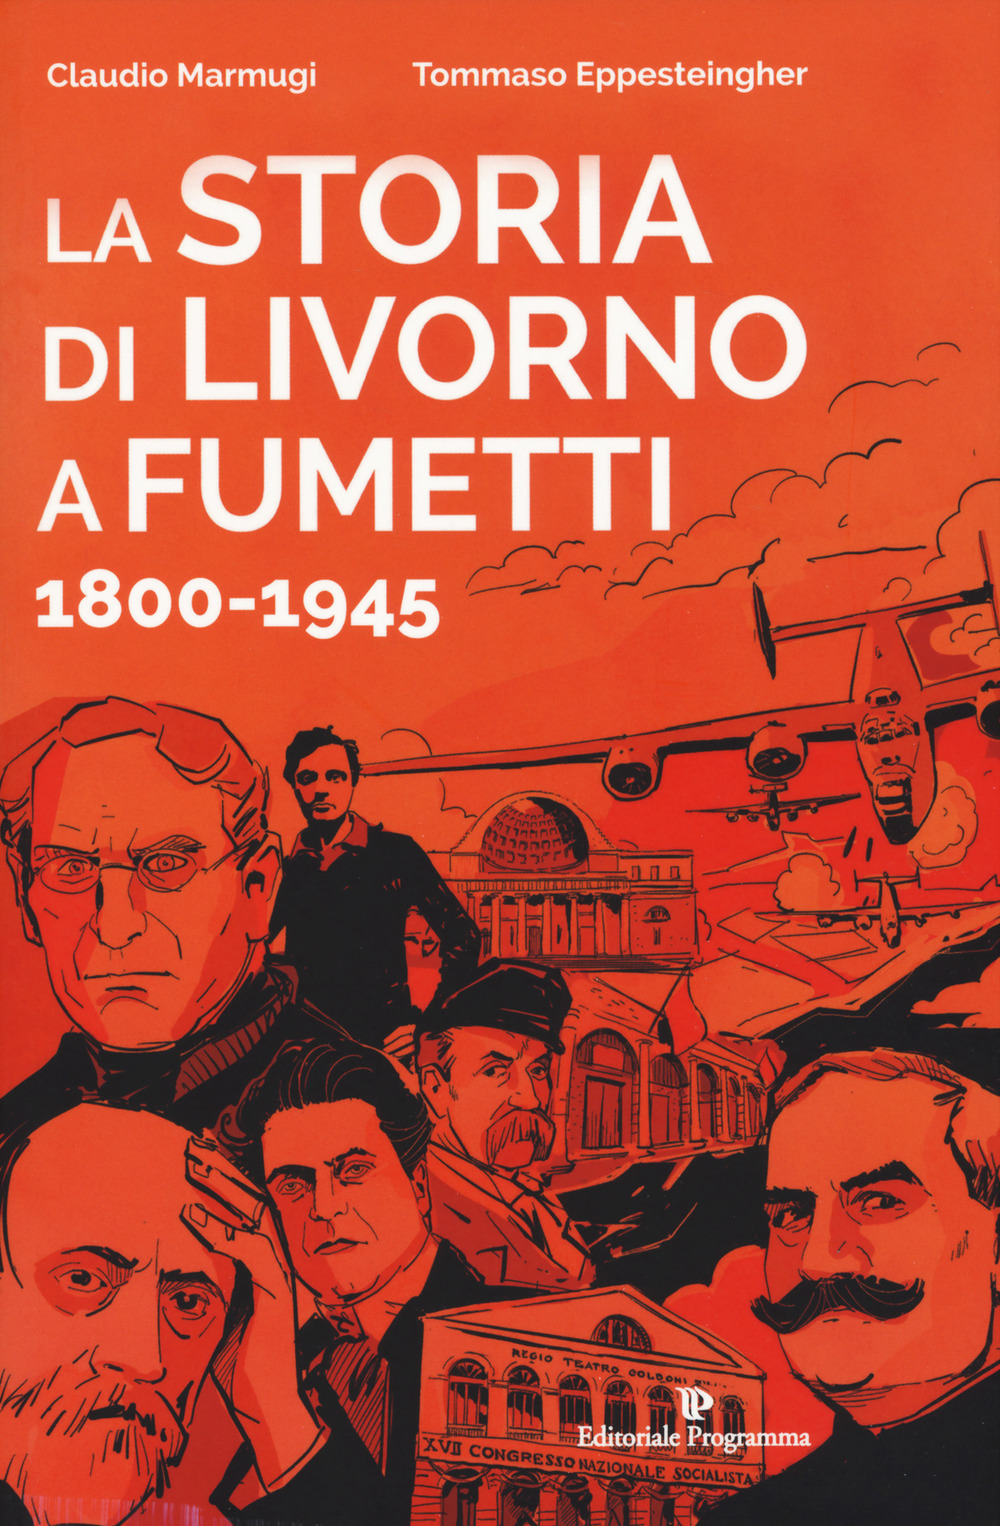 La storia di Livorno a fumetti 1800-1945